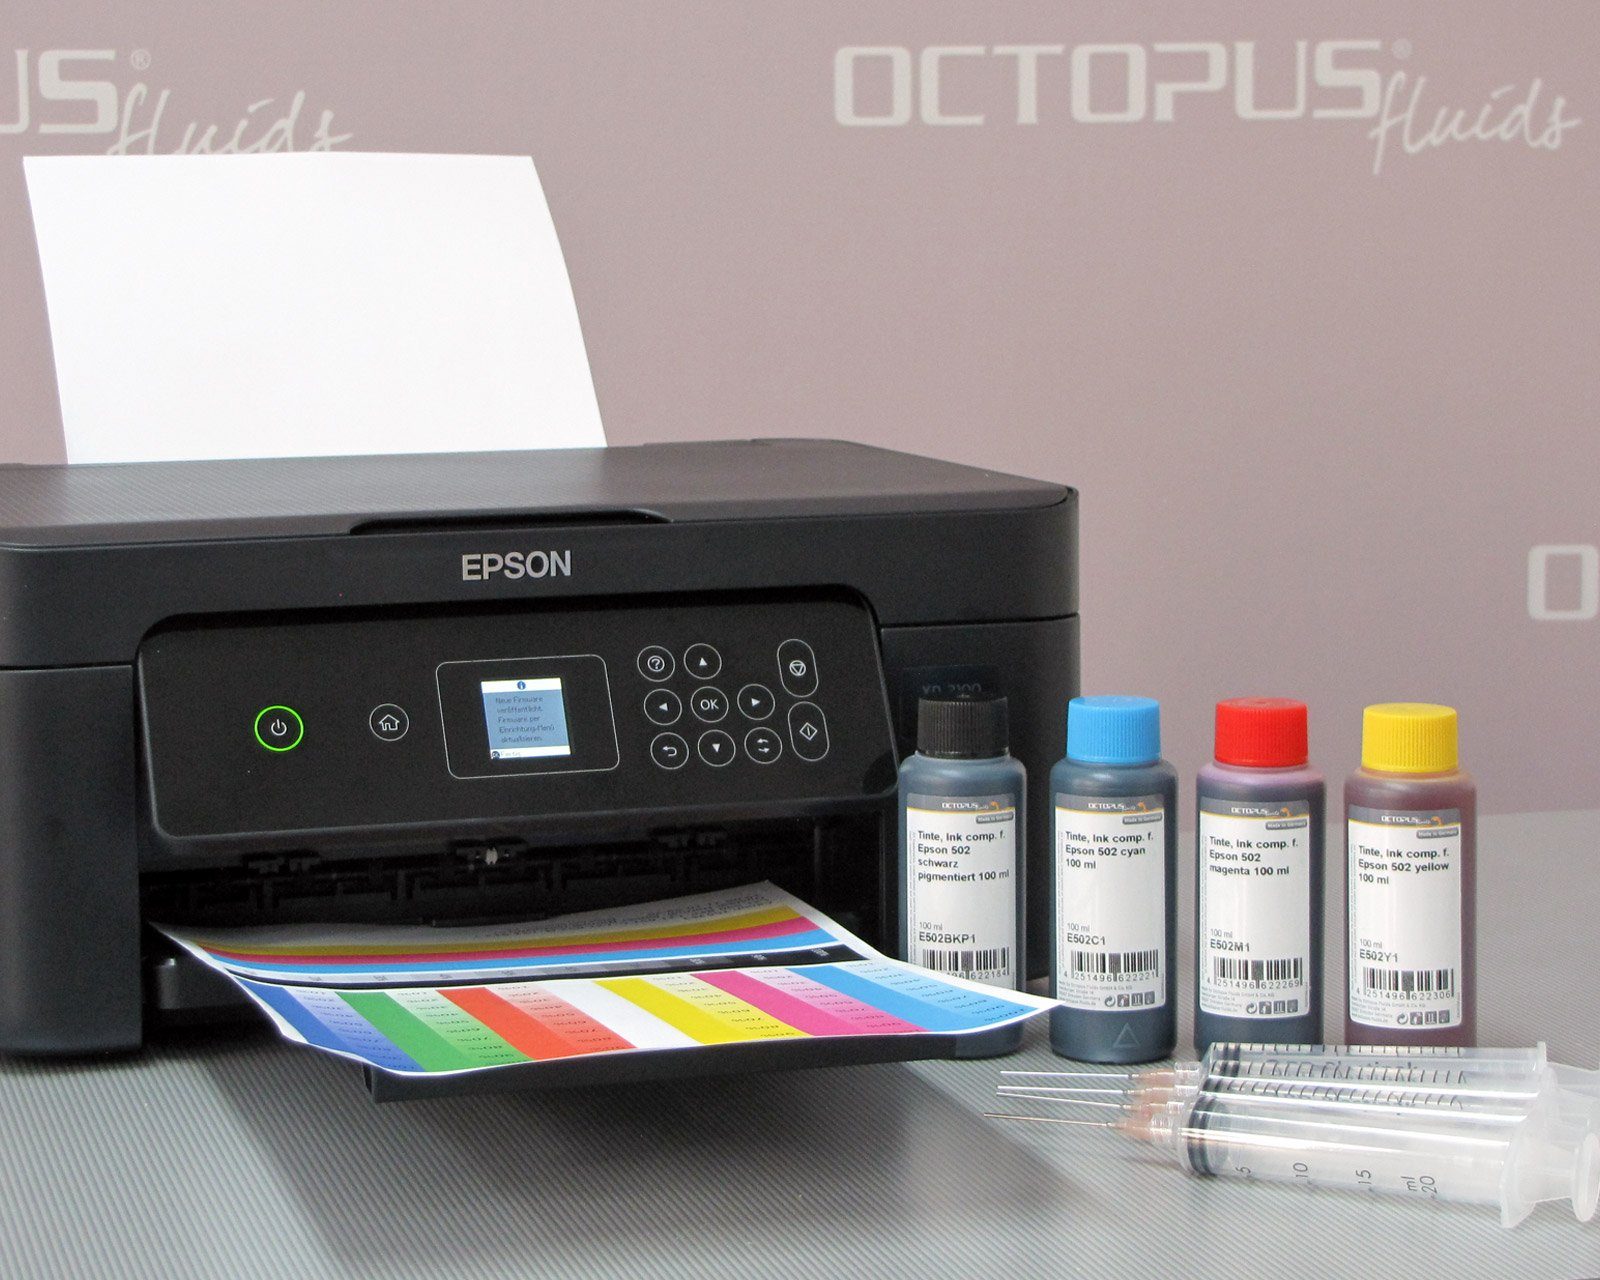 OCTOPUS Fluids Ink 603, Home Epson, XP-2100, x) Druckertinte, Nachfülltinte 3100, f. Epson Expression (für comp.